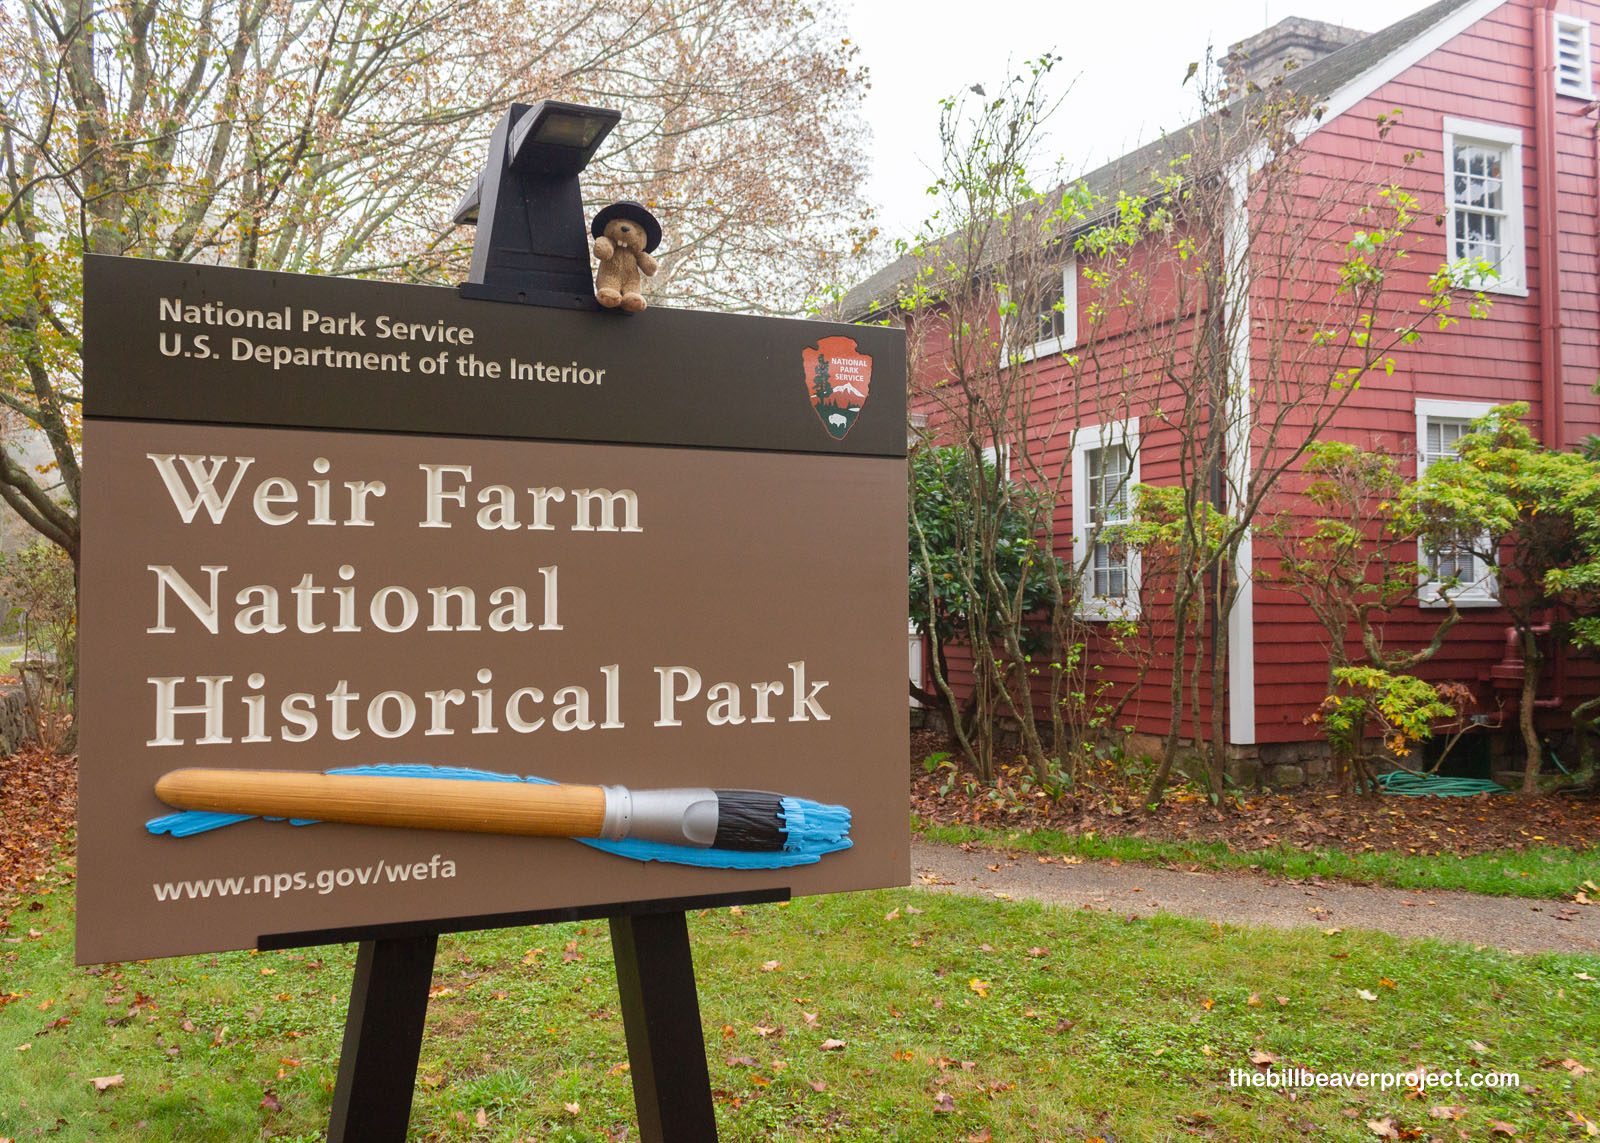 Weir Farm National Historical Park